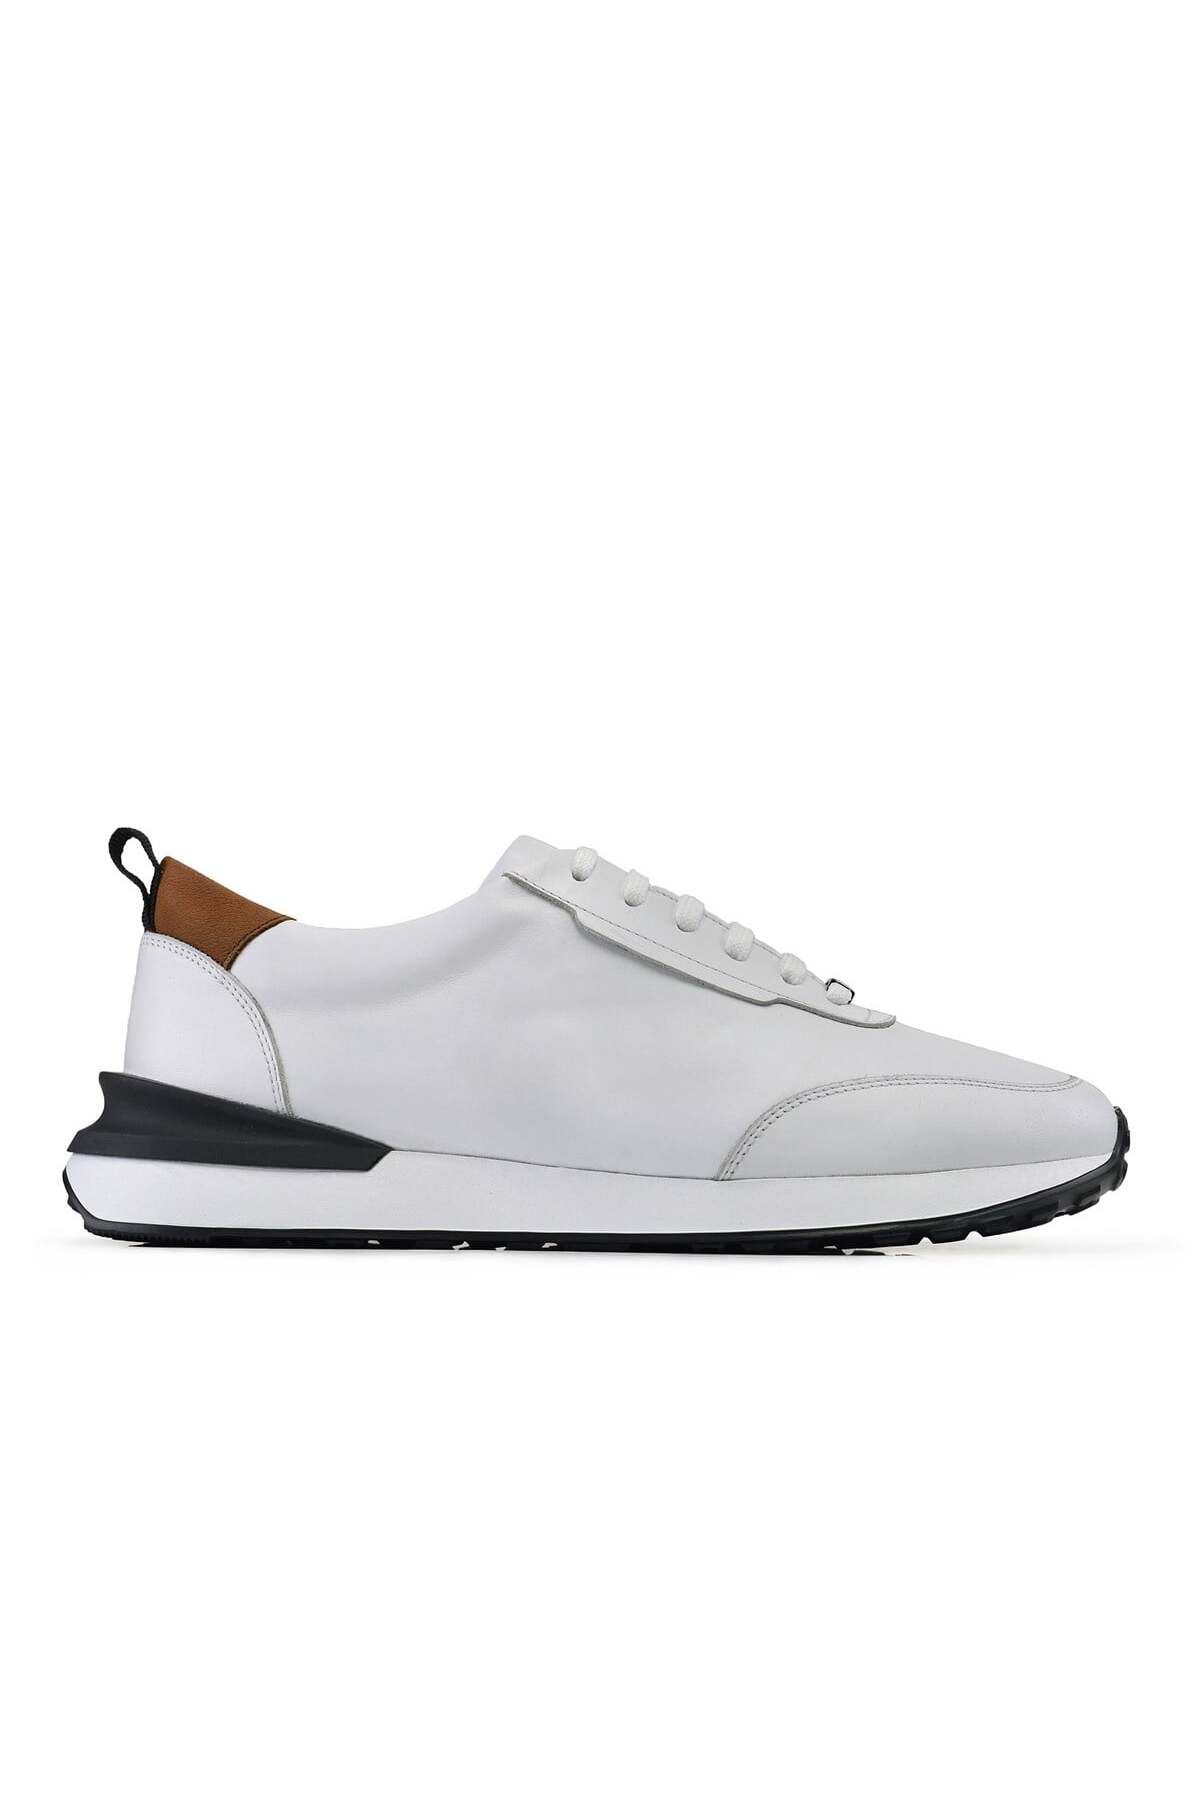 Nevzat Onay Beyaz Bağcıklı Sneaker Erkek Ayakkabı -34771-